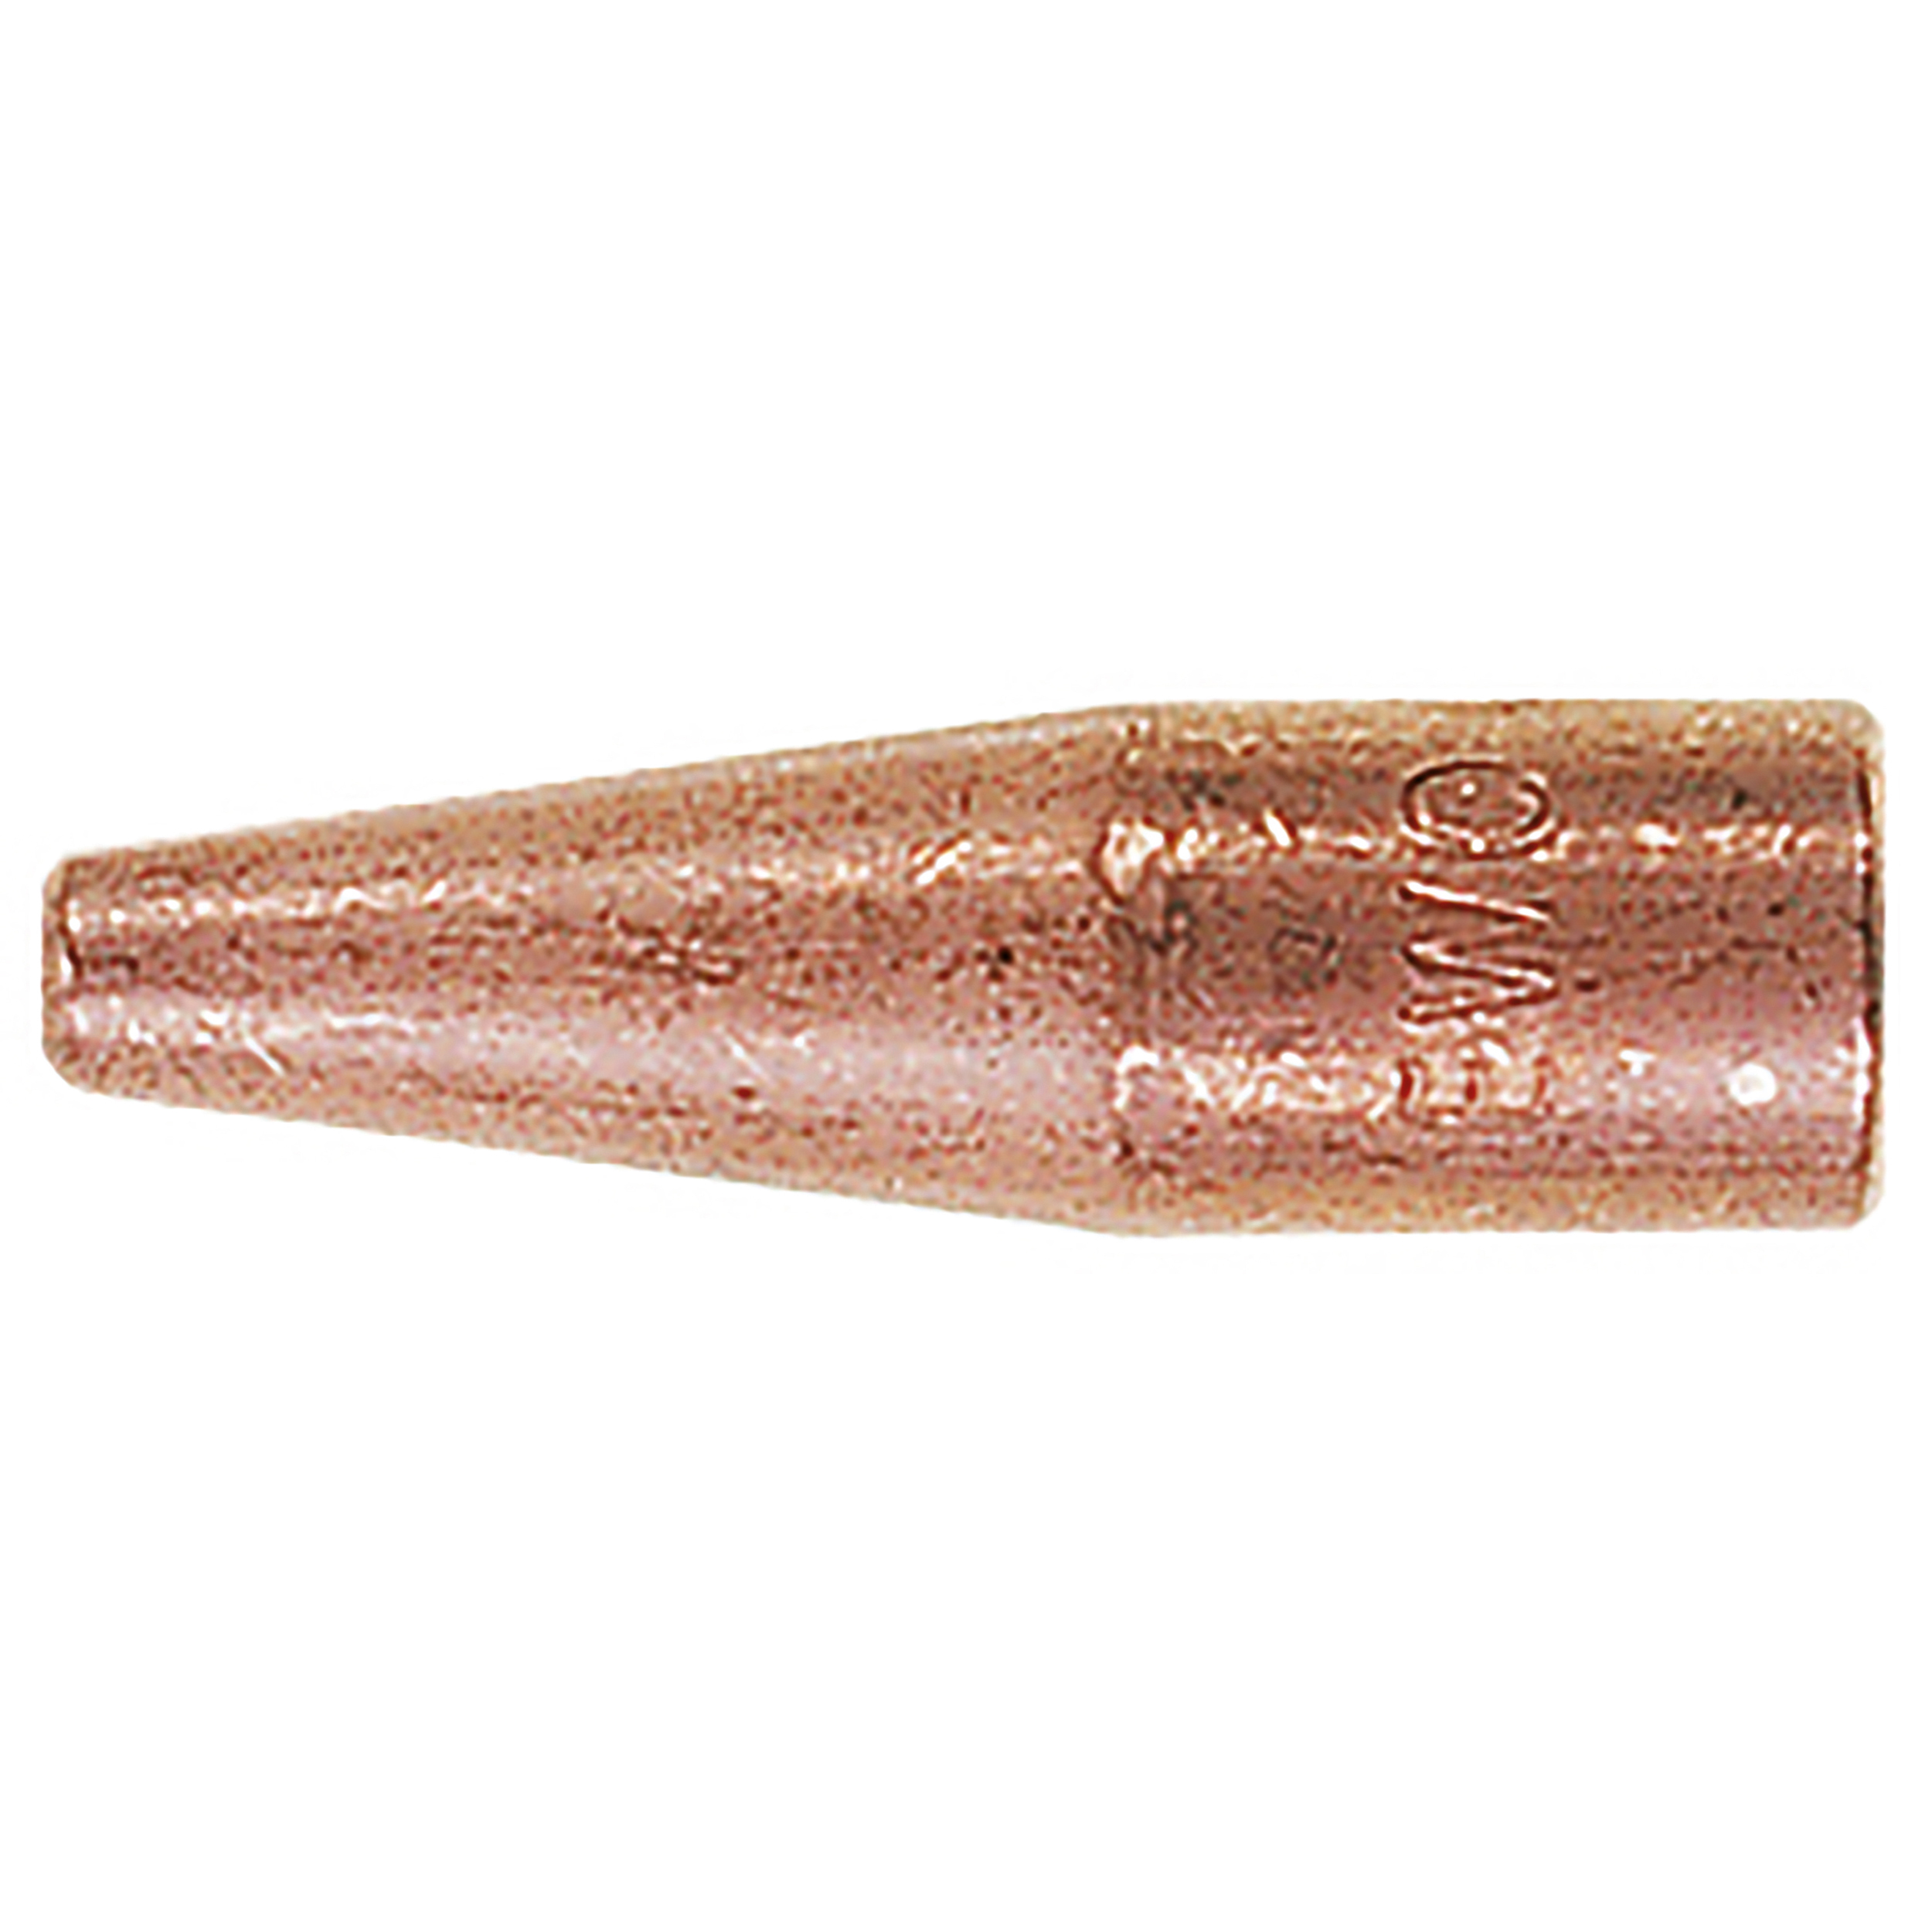 Schweißdüsen, passend für 17 mm Schaft, Gr. 1, Nennbereich (mm): 0,5 – 1, Gewinde: 8 × 28 Gg, Material: Kupfer